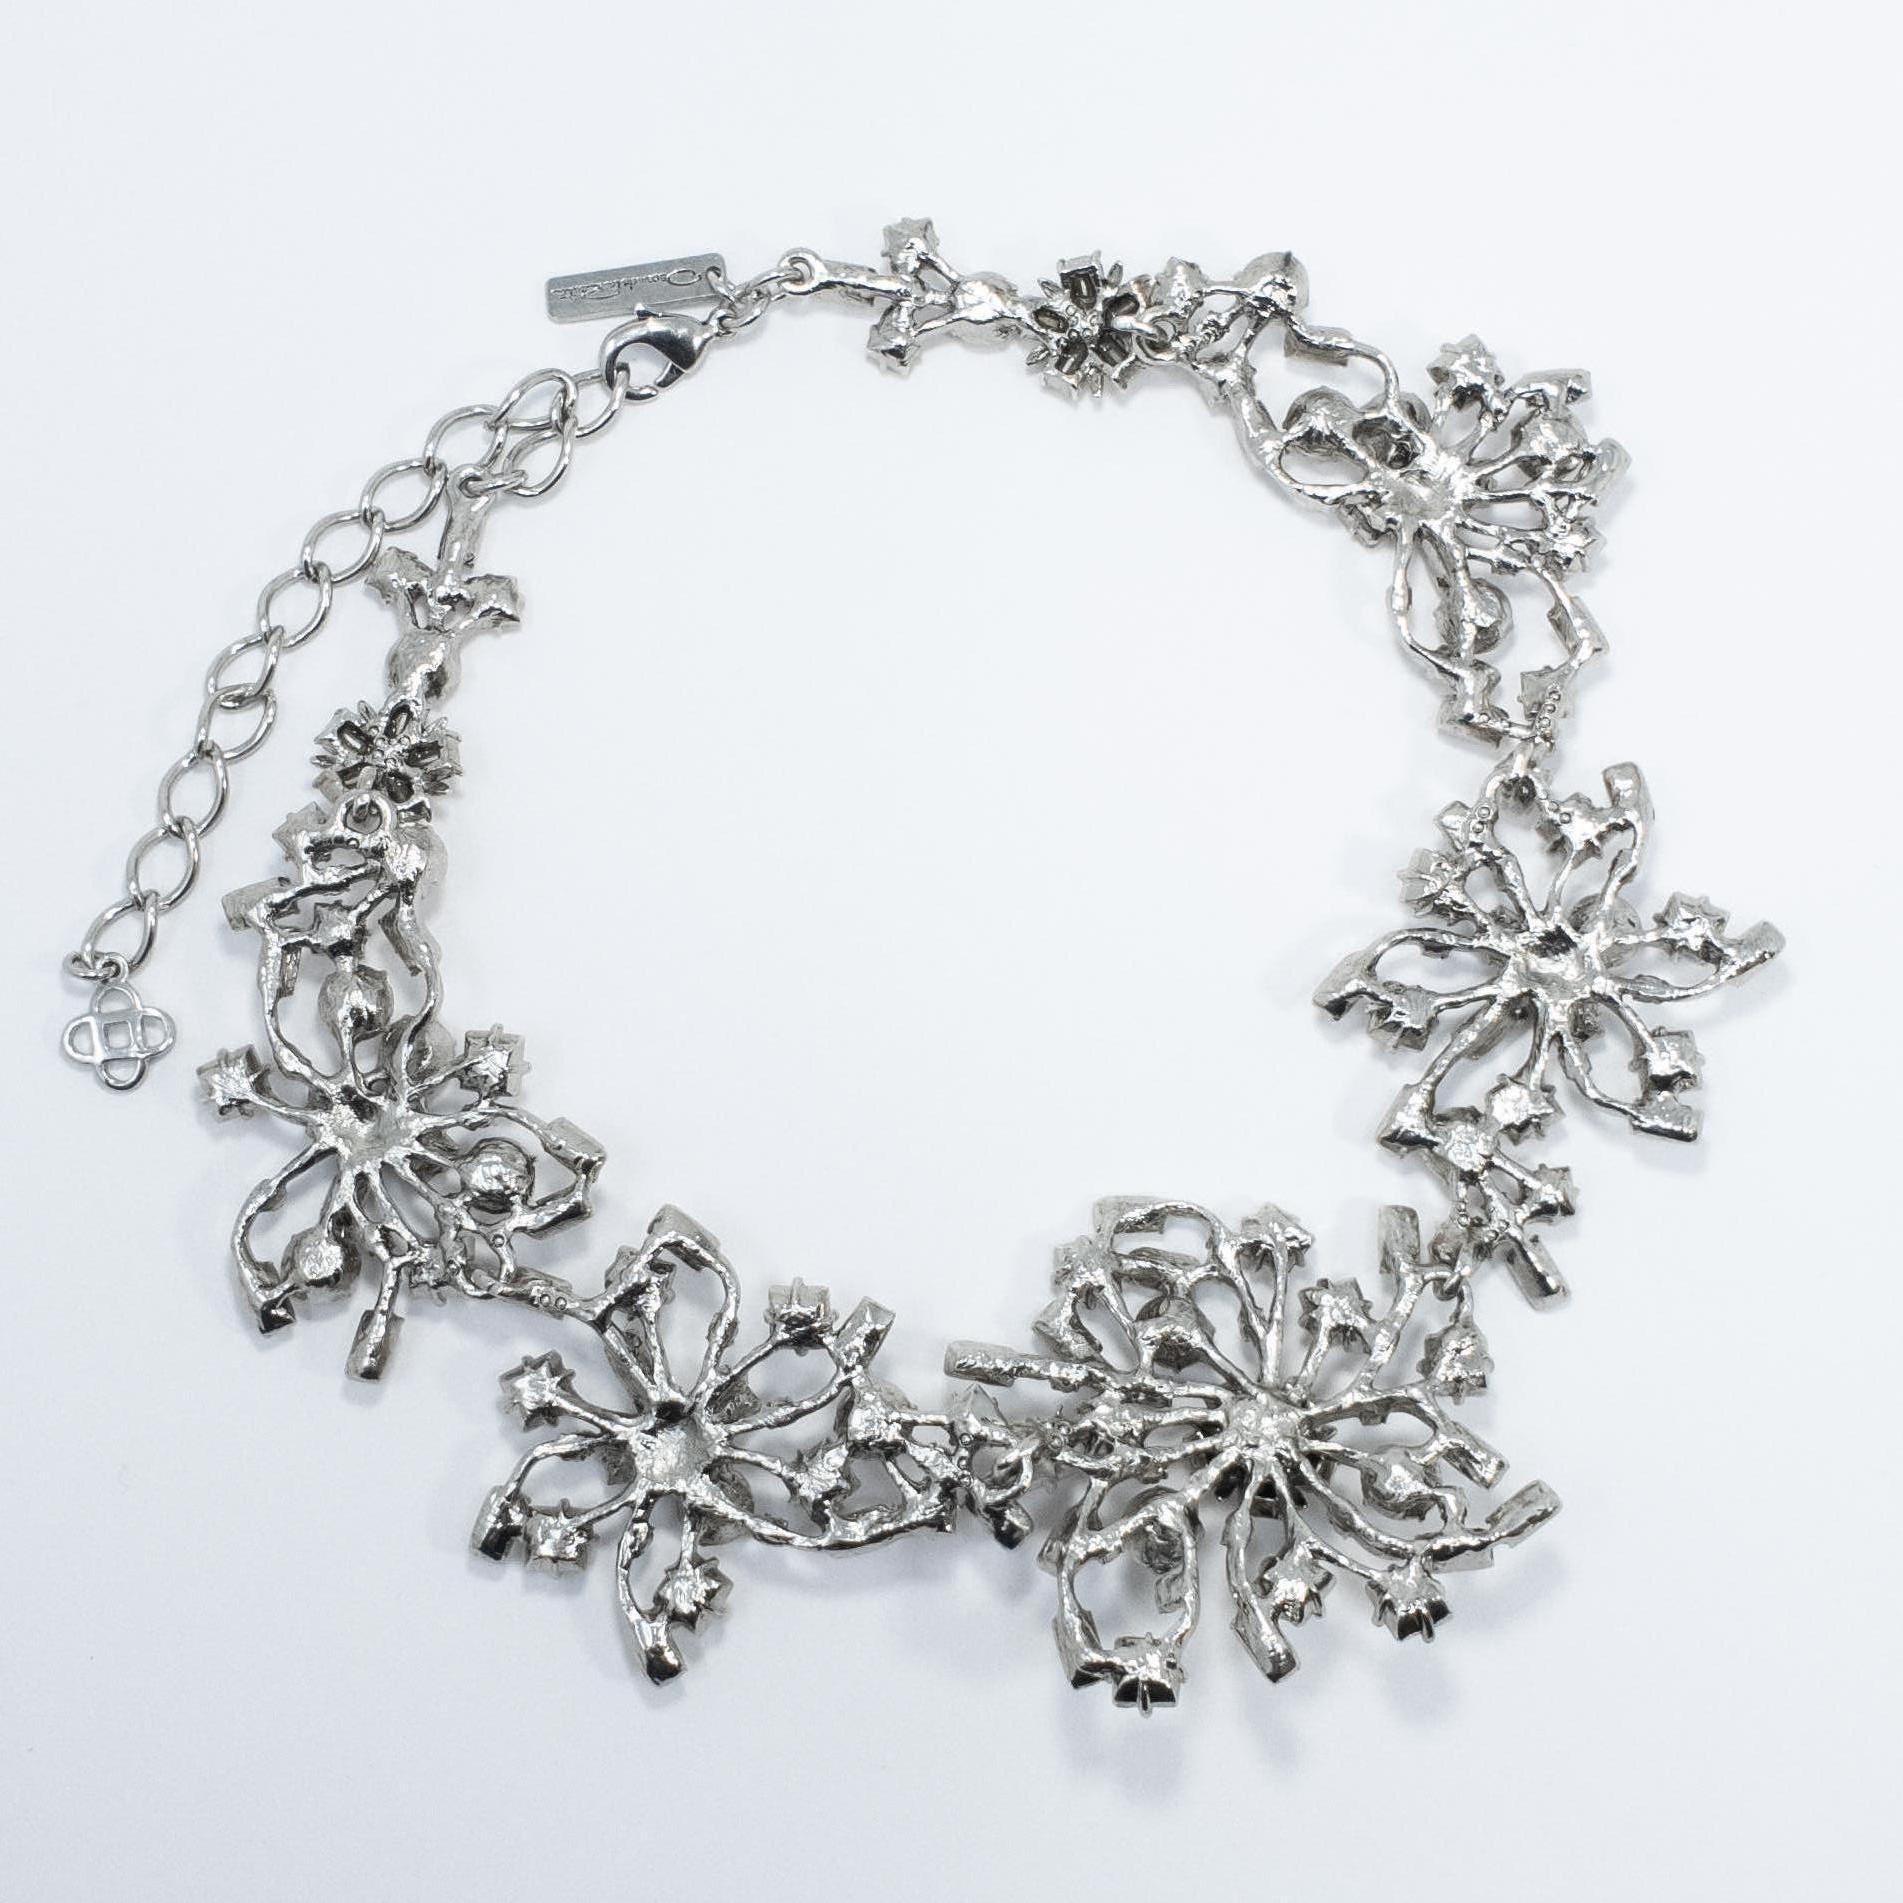 Women's or Men's Oscar de la Renta Contemporary Crystal Flower Link Necklace, Silvertone